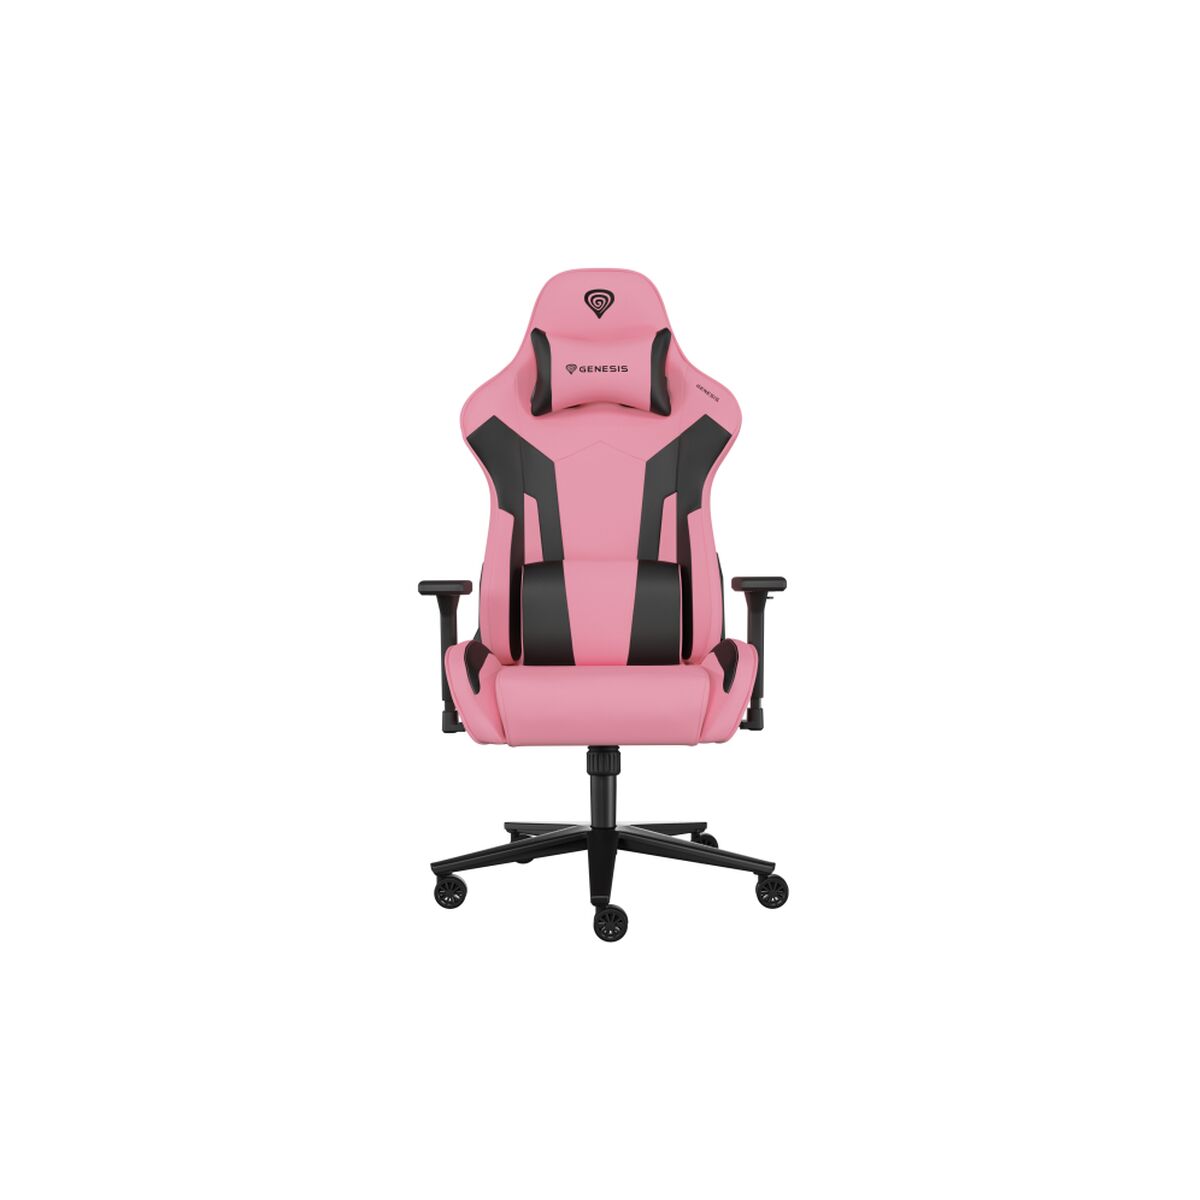 Gaming Chair Genesis Nitro 720 Pink